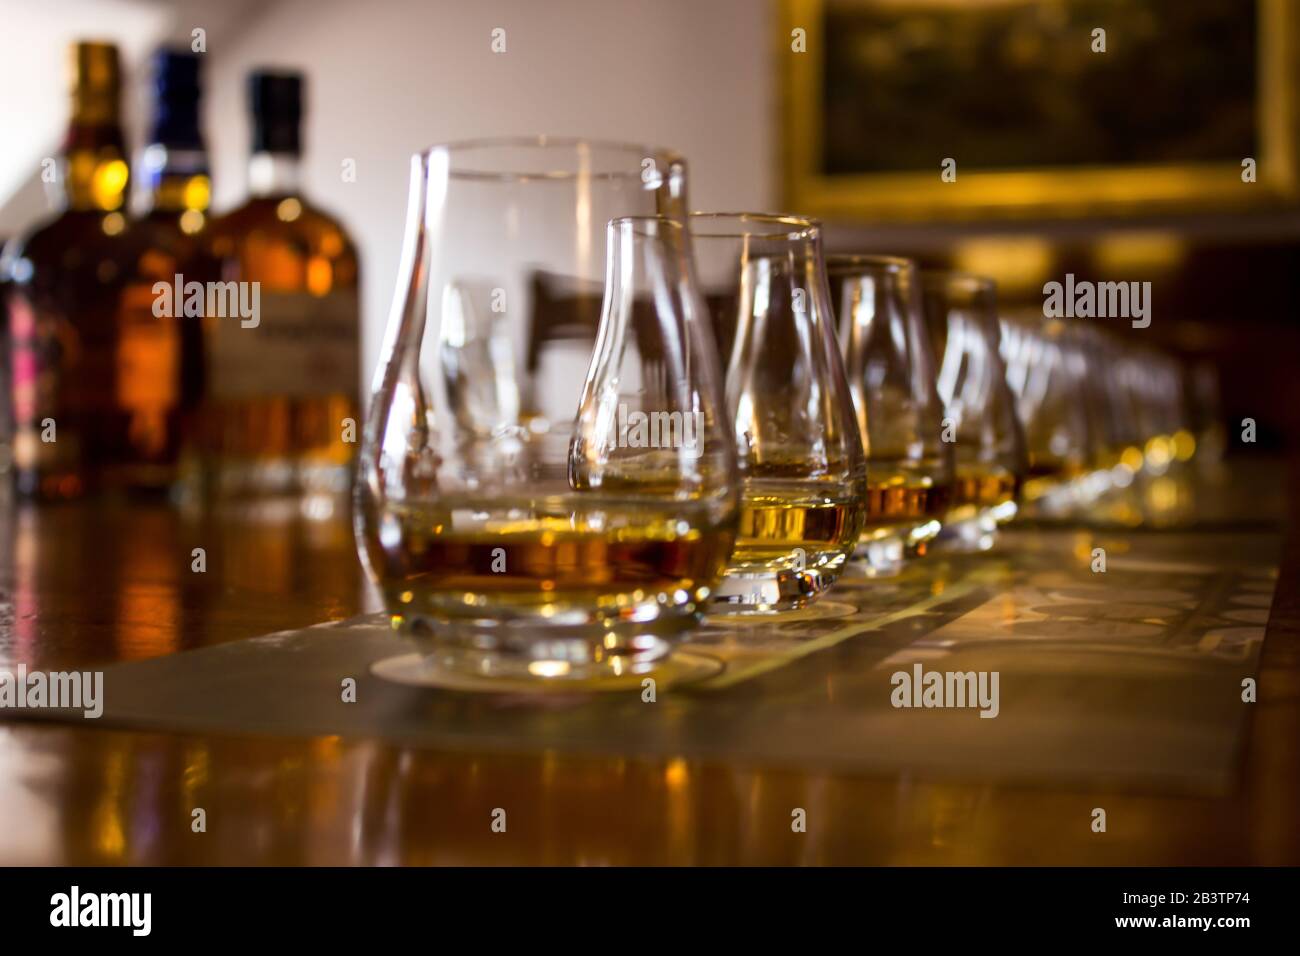 Une gamme de verres de dégustation remplis de différents types De Whiskies pour la dégustation, avec l'accent sur le deuxième verre, le reste est hors de l'intérêt Banque D'Images